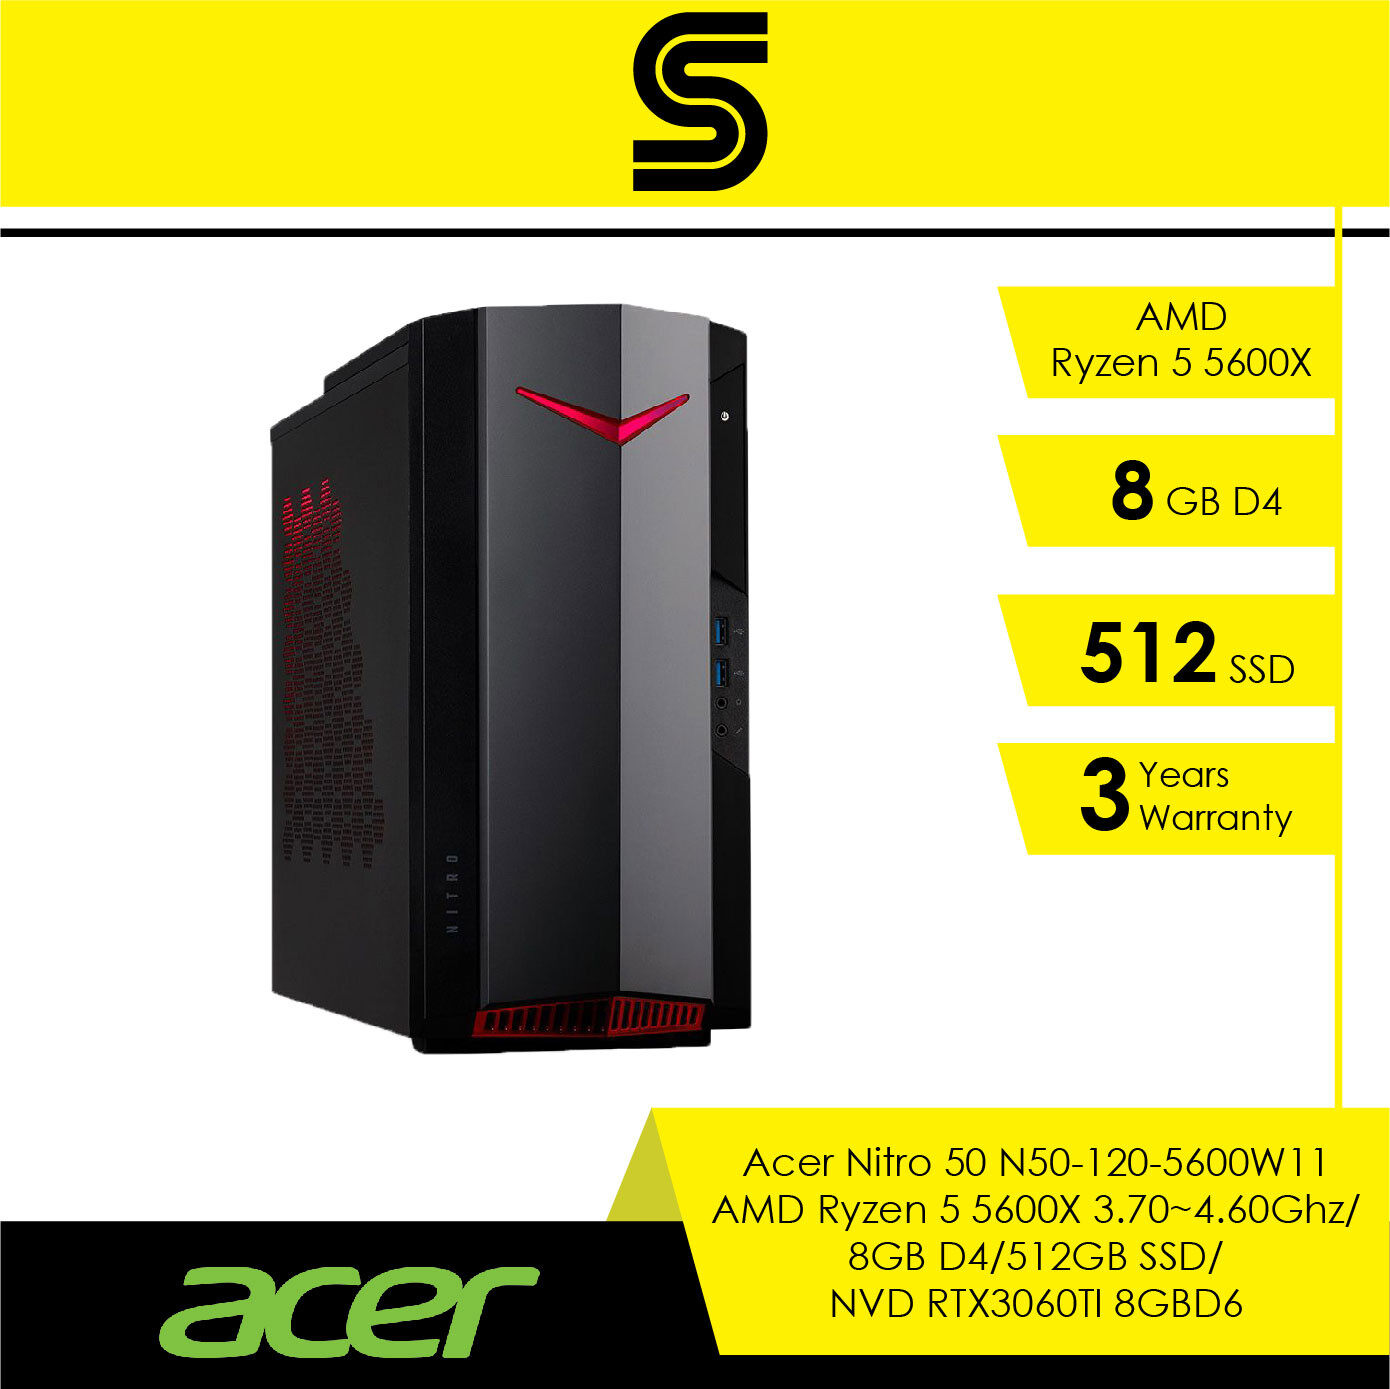 Acer Nitro 50 Gaming Desktop N50-120-5600W11/AMD Ryzen 5 5600X 3.70~4.60Ghz/8GB D4/512GB SSD/NVD RTX3060TI 8GBD6/No Odd/Acer Wireless KB&MSE/Windows 11/3 Years Onsite Warranty